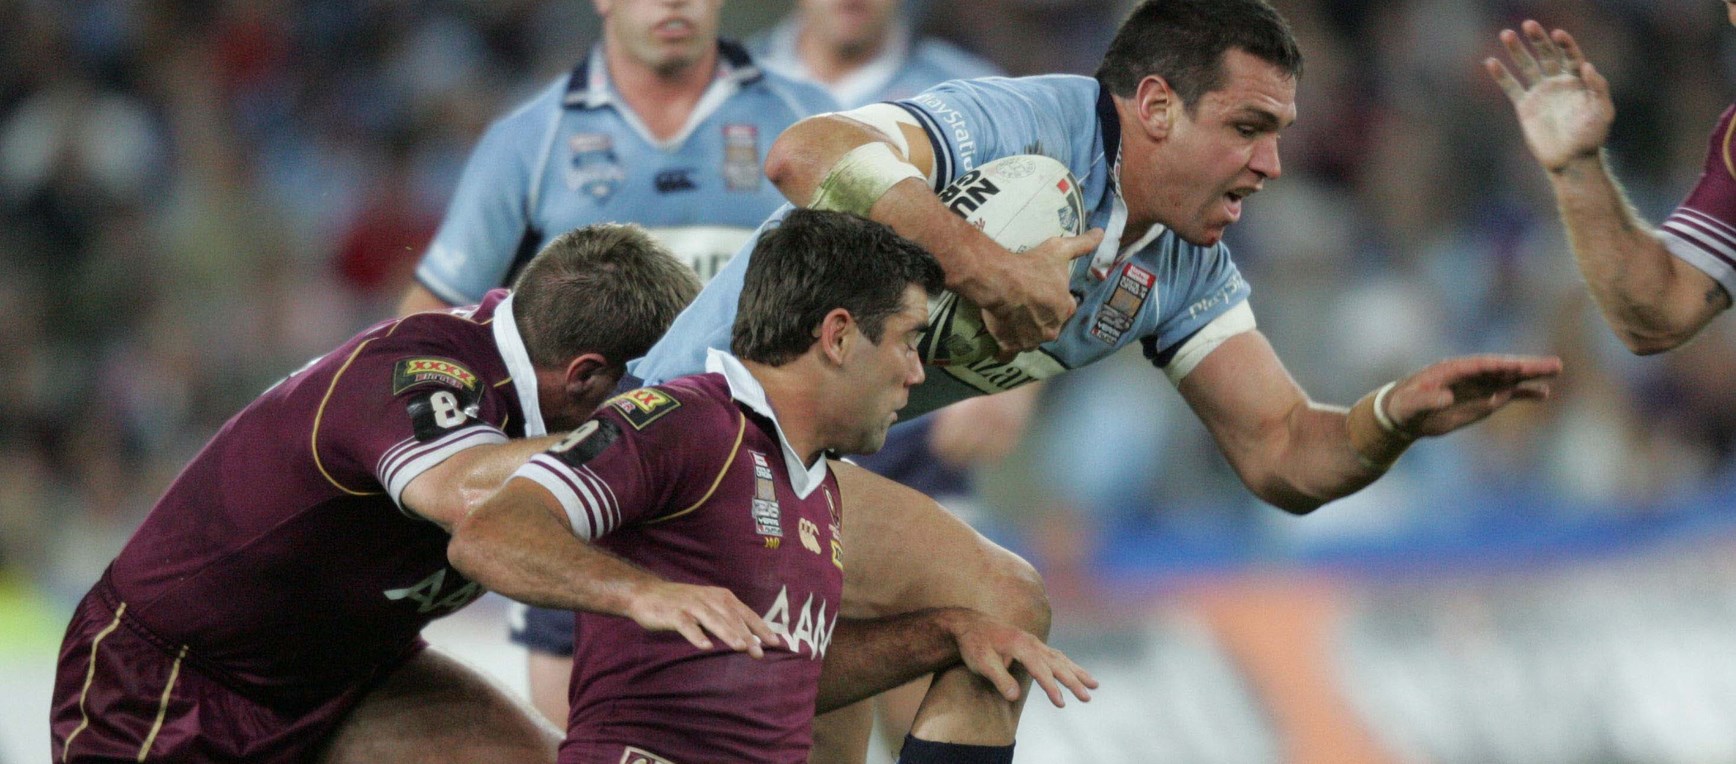 2005: NSW v Queensland, Origin II